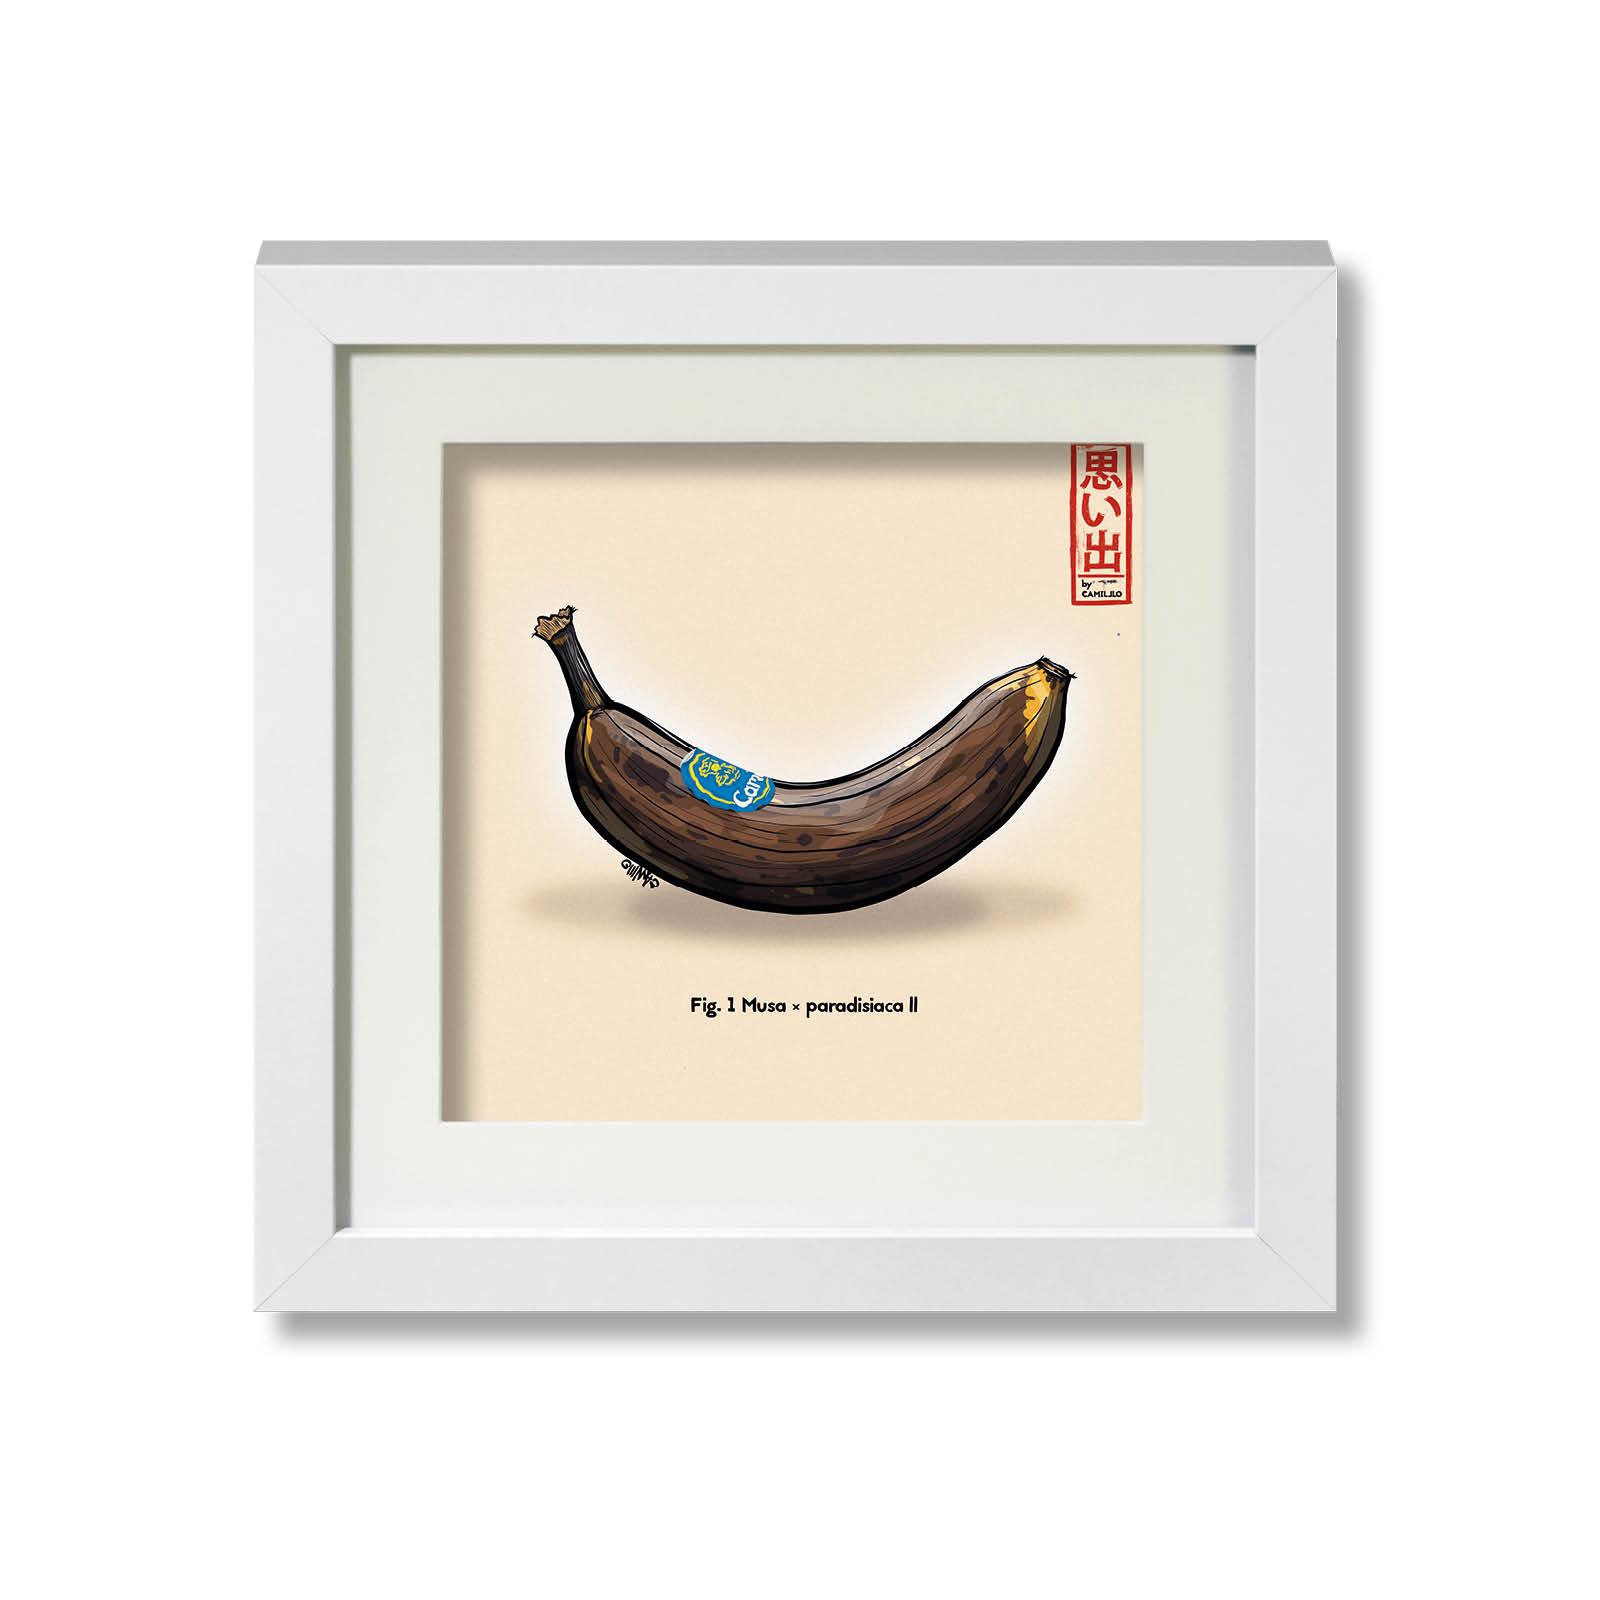 Giclée-Druck einer reifen Banane - Rockstar unter den Früchten - weißer Rahmen - große Größe